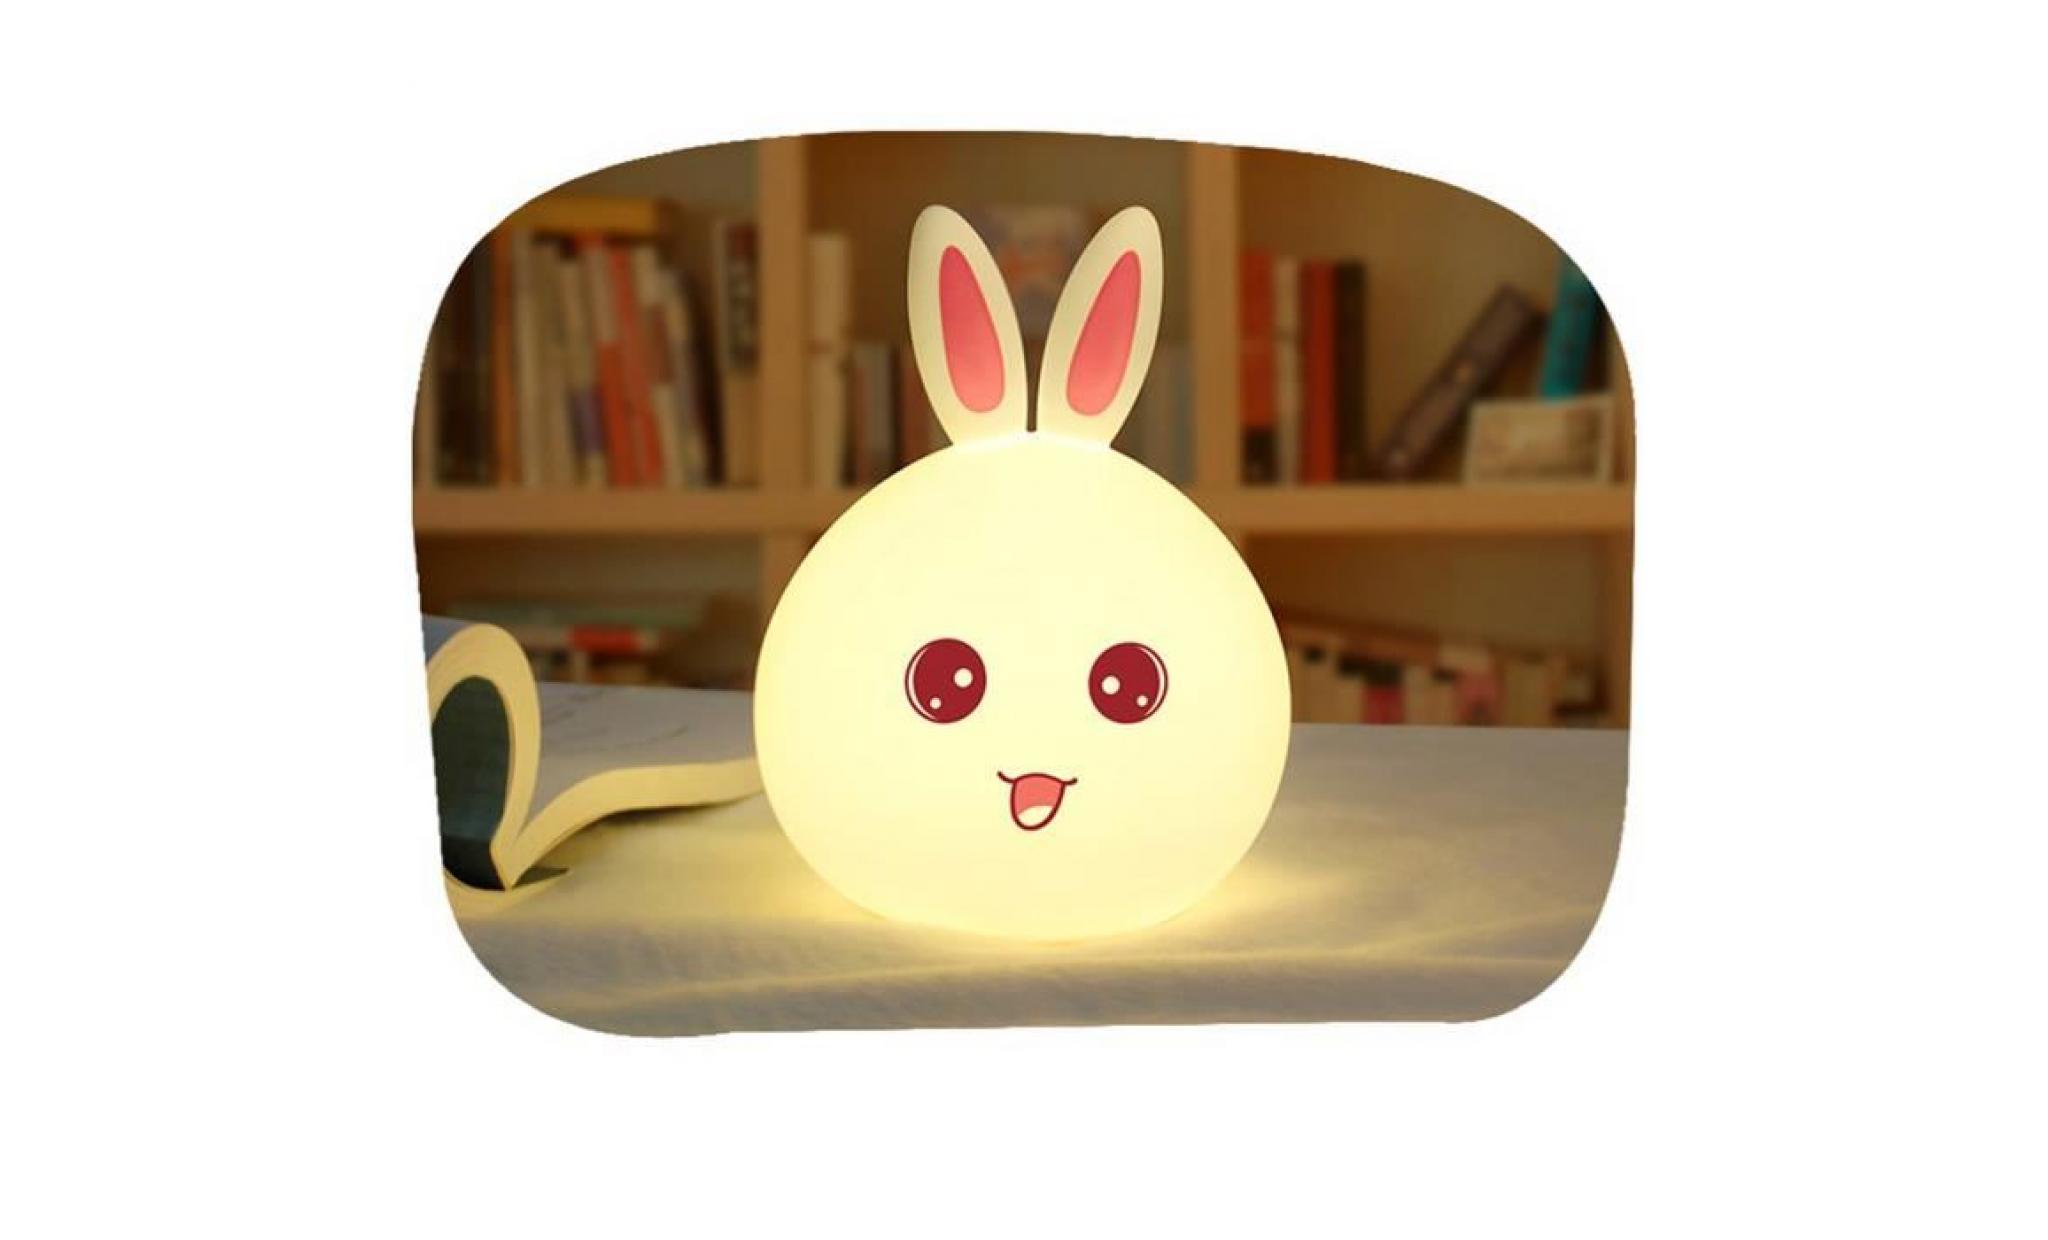 lovely rabbit smile face night light children bedroom decor mini led lamp bulb paontry1231 pas cher